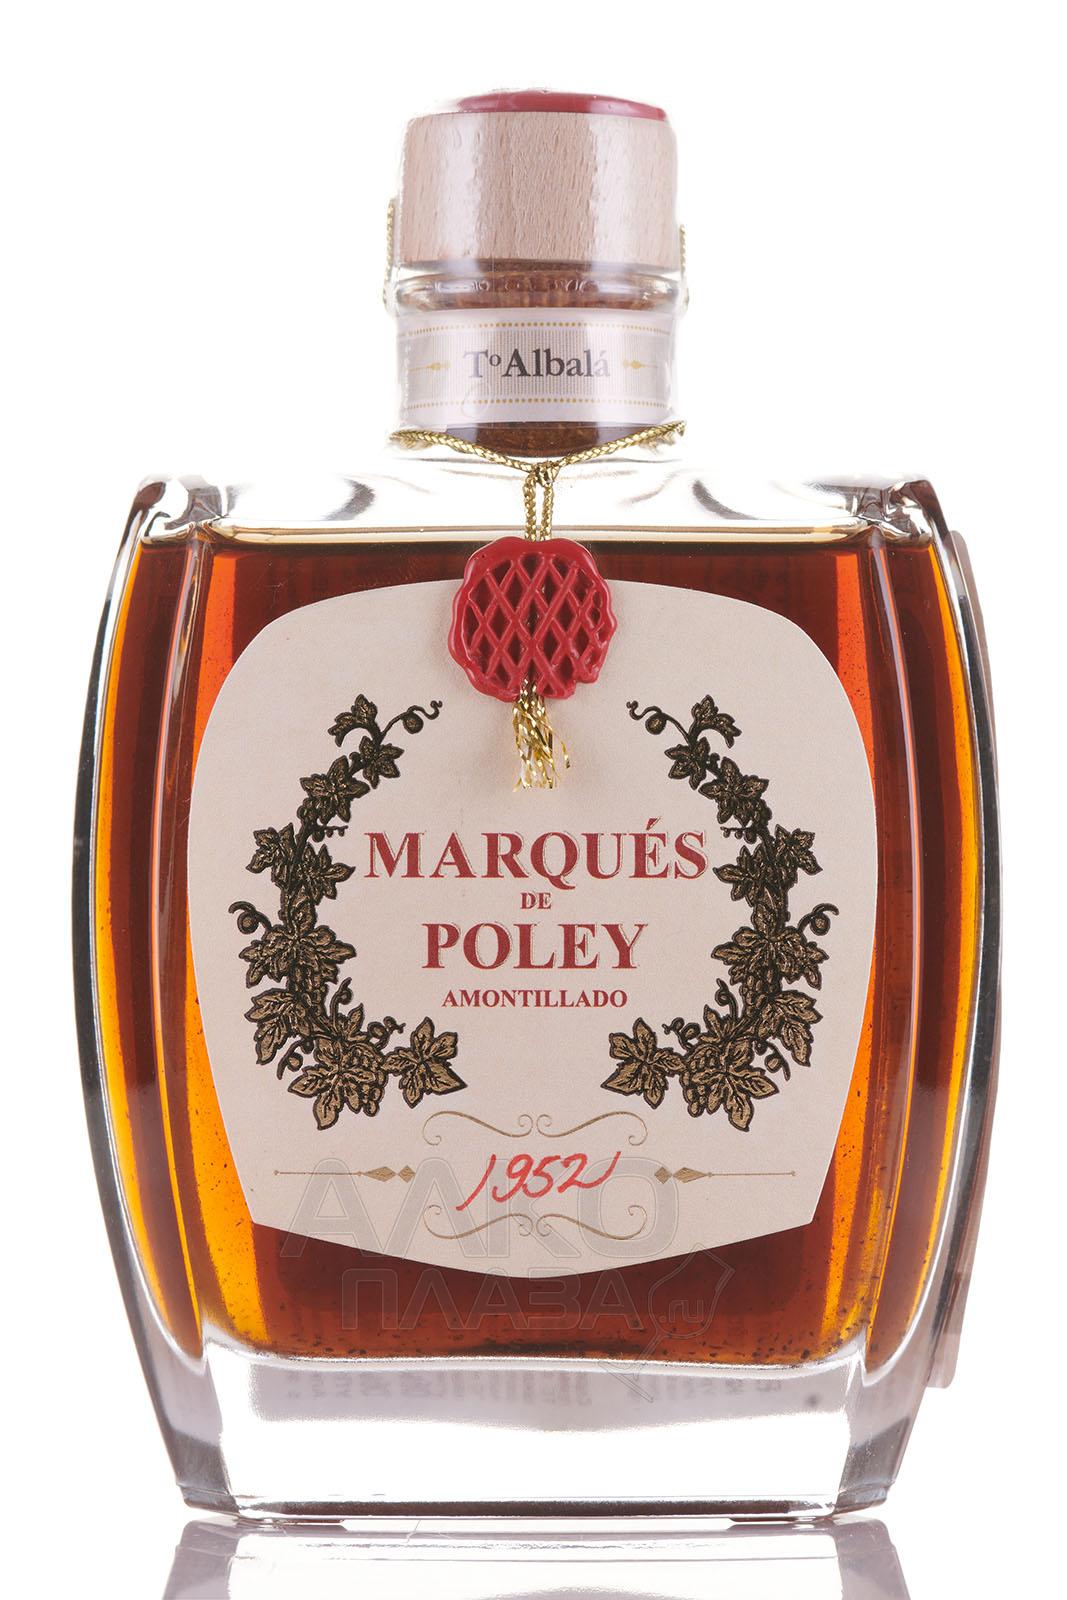 Marques de Poley Amontillado - херес Маркиз де Полей Амонтильядо 1952 год 0.2 л выдержанное